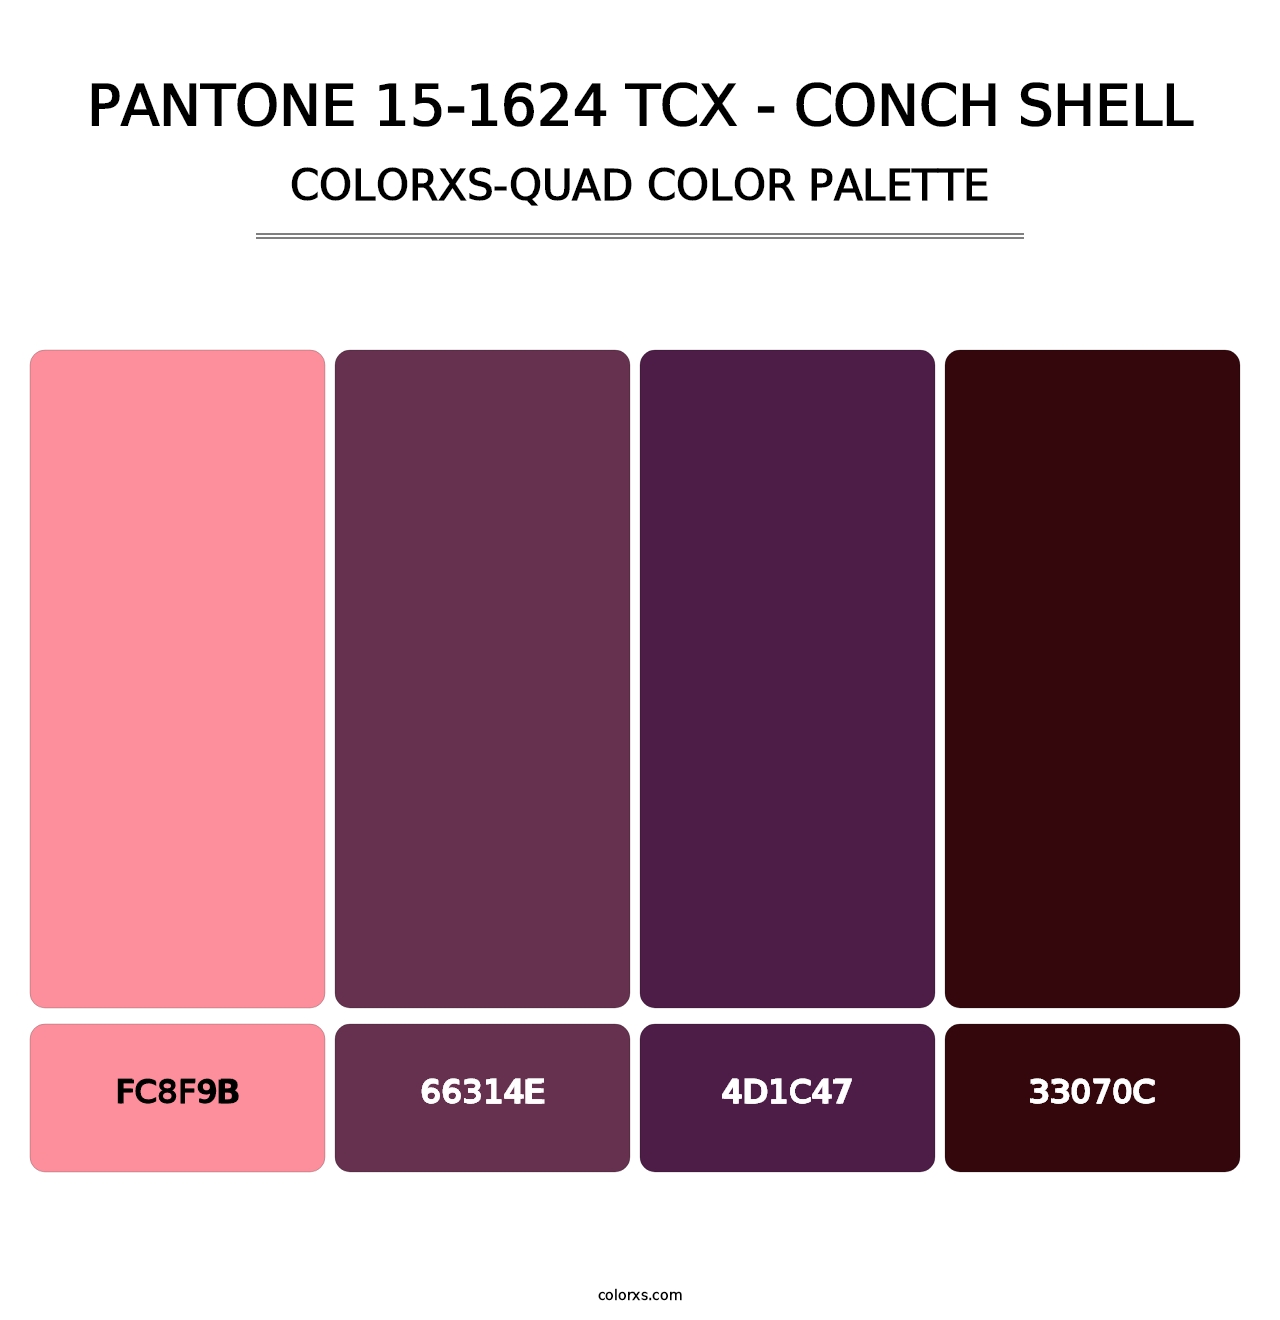 PANTONE 15-1624 TCX - Conch Shell - Colorxs Quad Palette